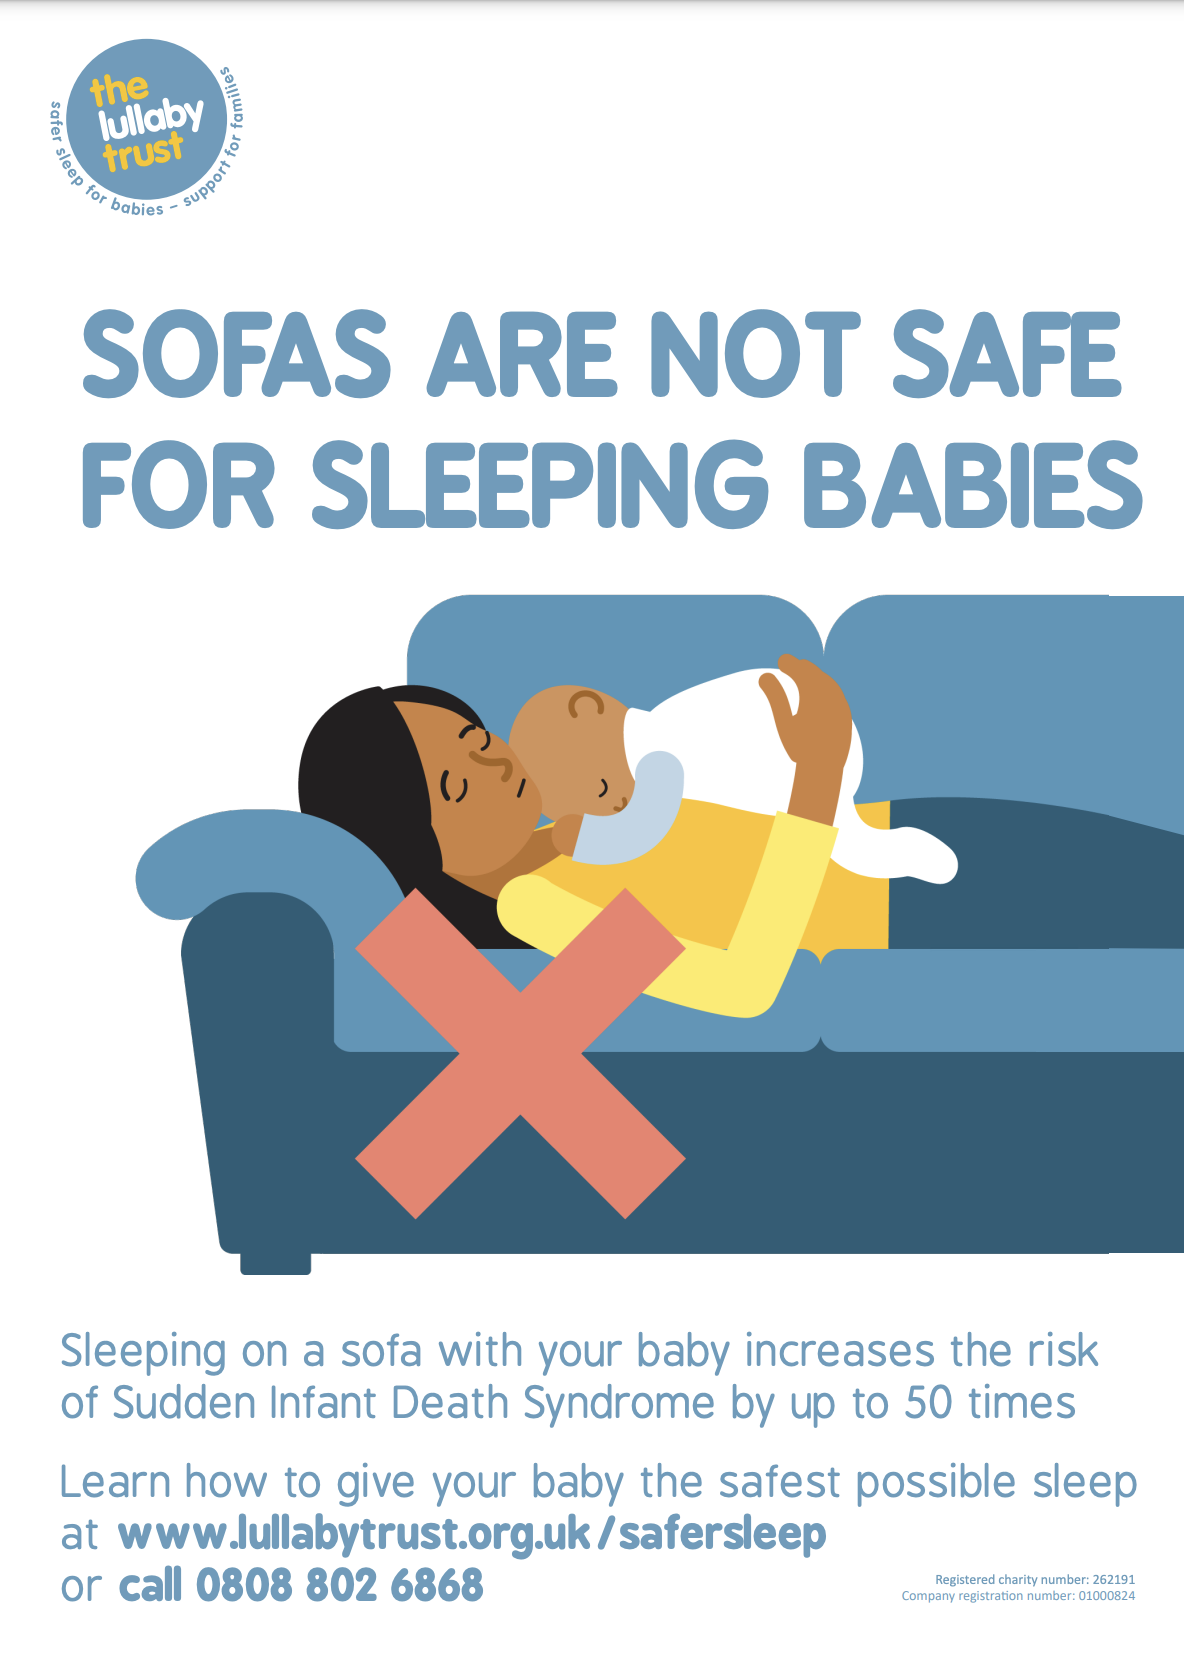 Keep asleep. Safest for Baby. Sleep safe Balance. Keep quiet! The Baby _______________ in the Bedroom Now. A) is sleeping b) sleeping c) Sleeps f) перевод.